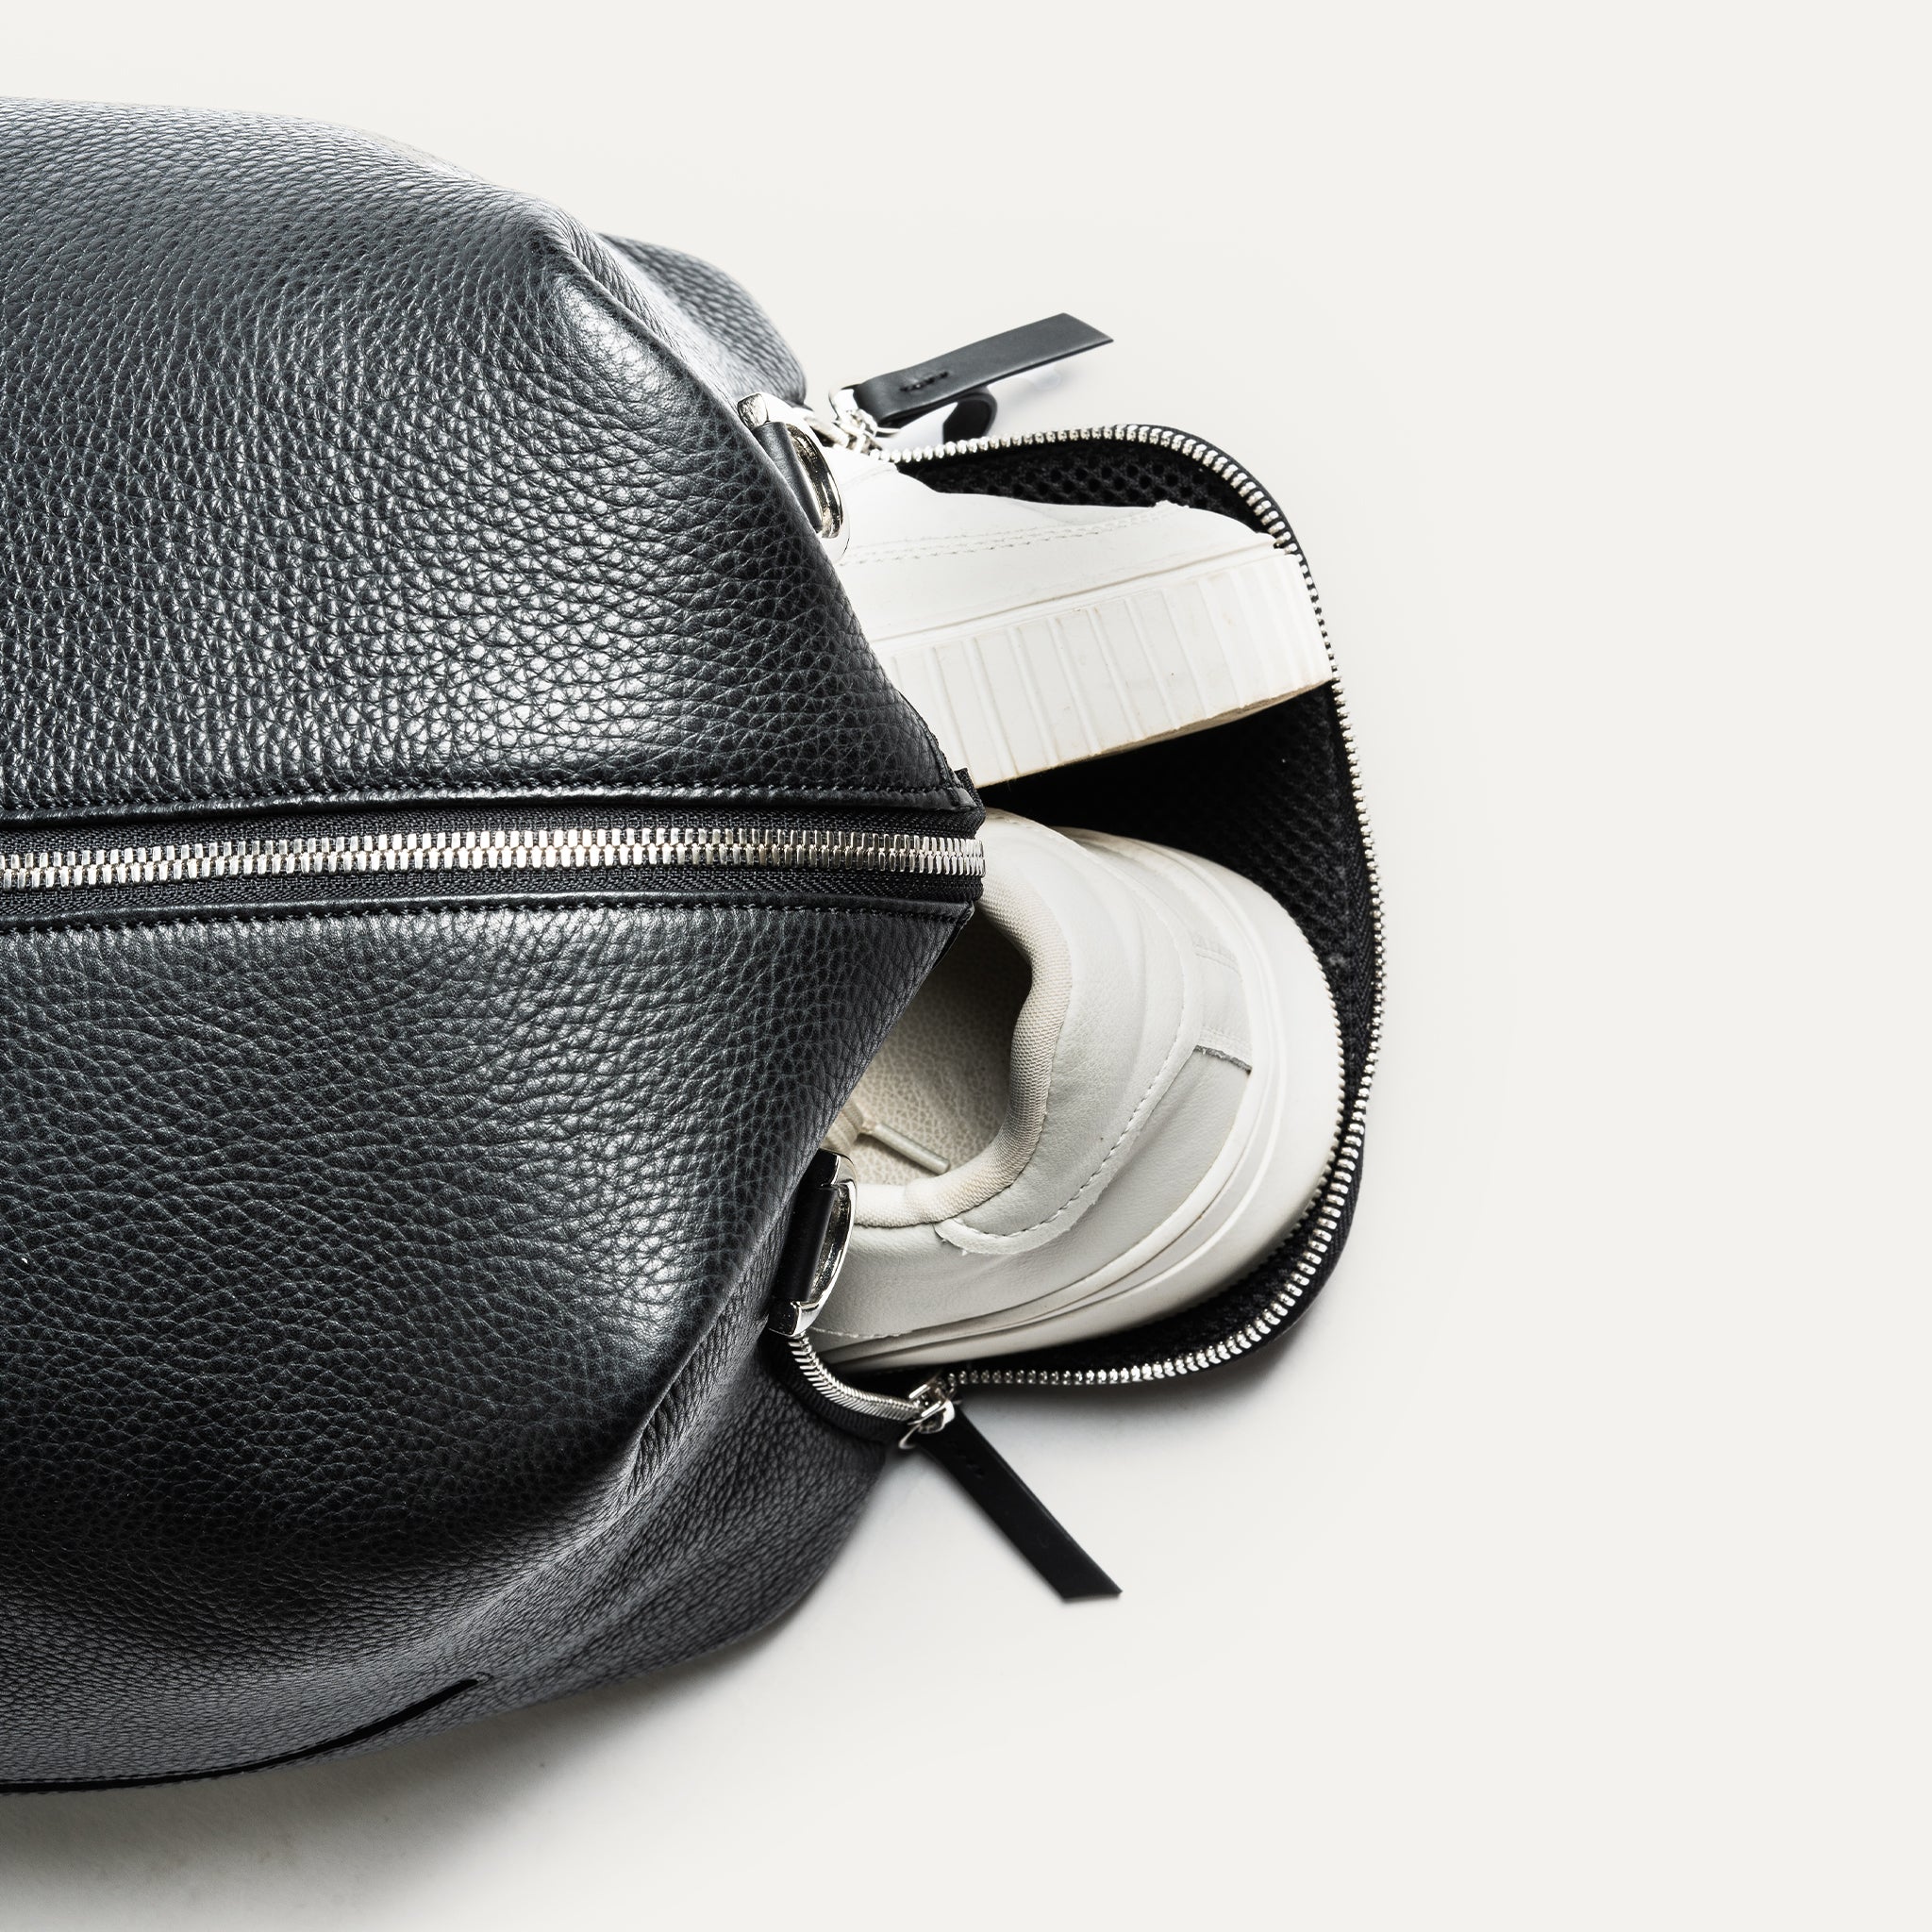 Parfait pour les escapades de week-end, ce sac de voyage en cuir noir est compact mais spacieux. Il comprend une poche pour ordinateur et des poches pour accessoires. Les poches extérieures permettent de ranger chaussures ou linge sale. Un sac élégant et pratique pour toutes vos aventures.